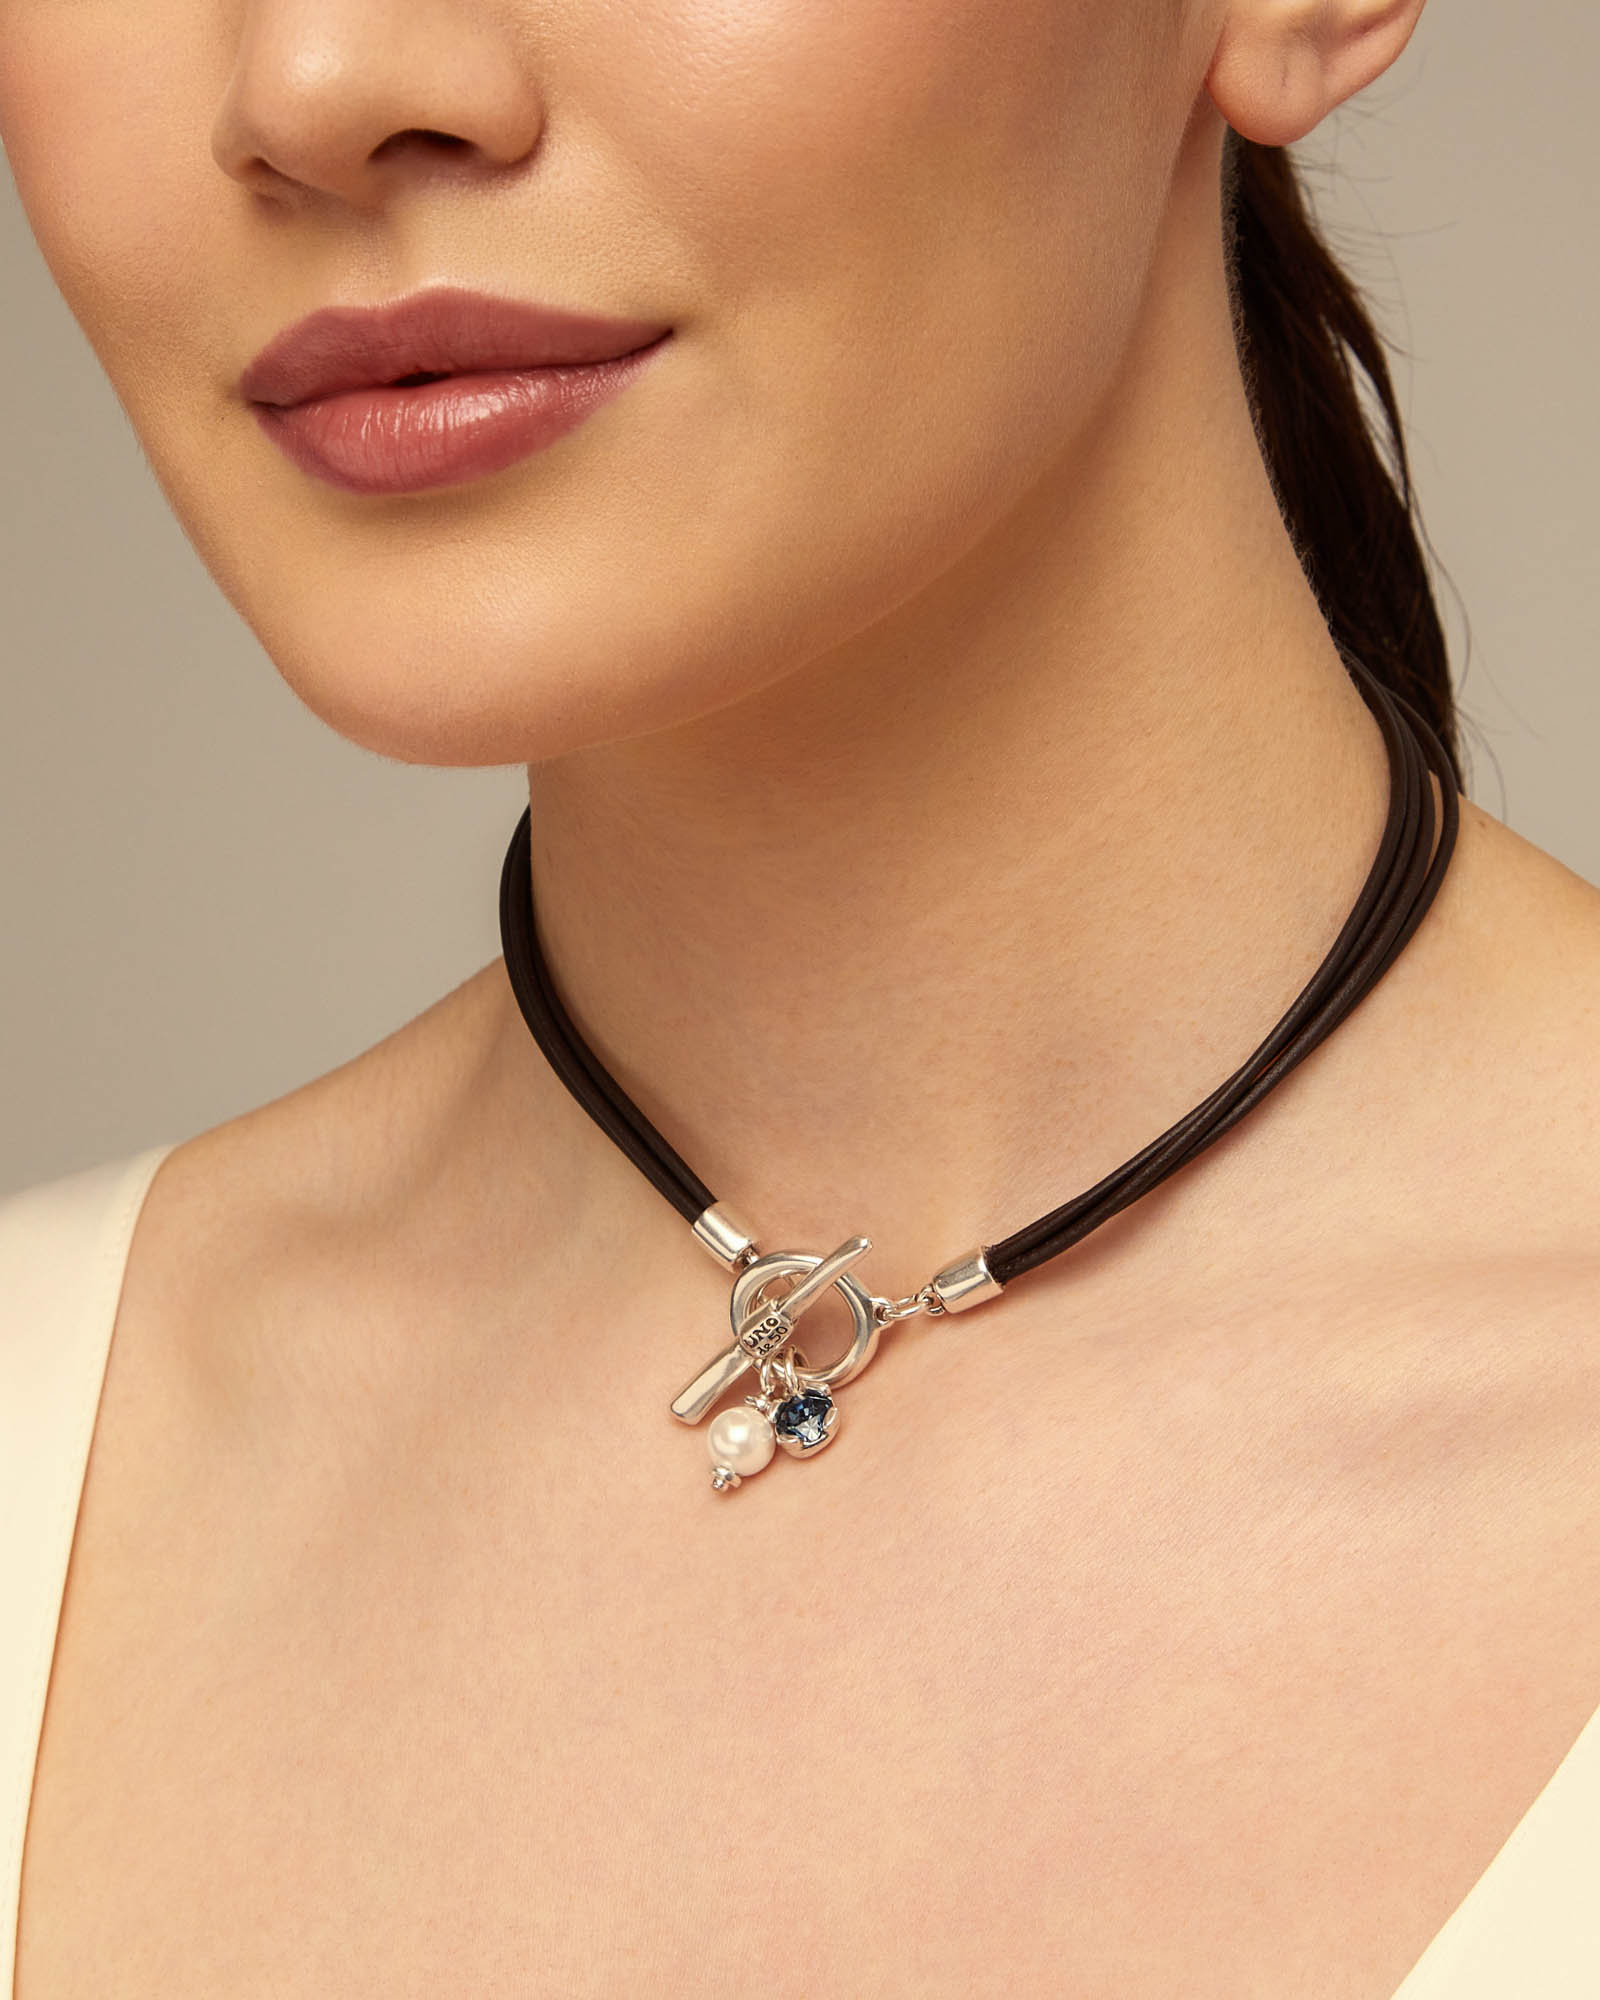 Collar de cuero con cierre central con charm de perla y cristal., Plateado, large image number null